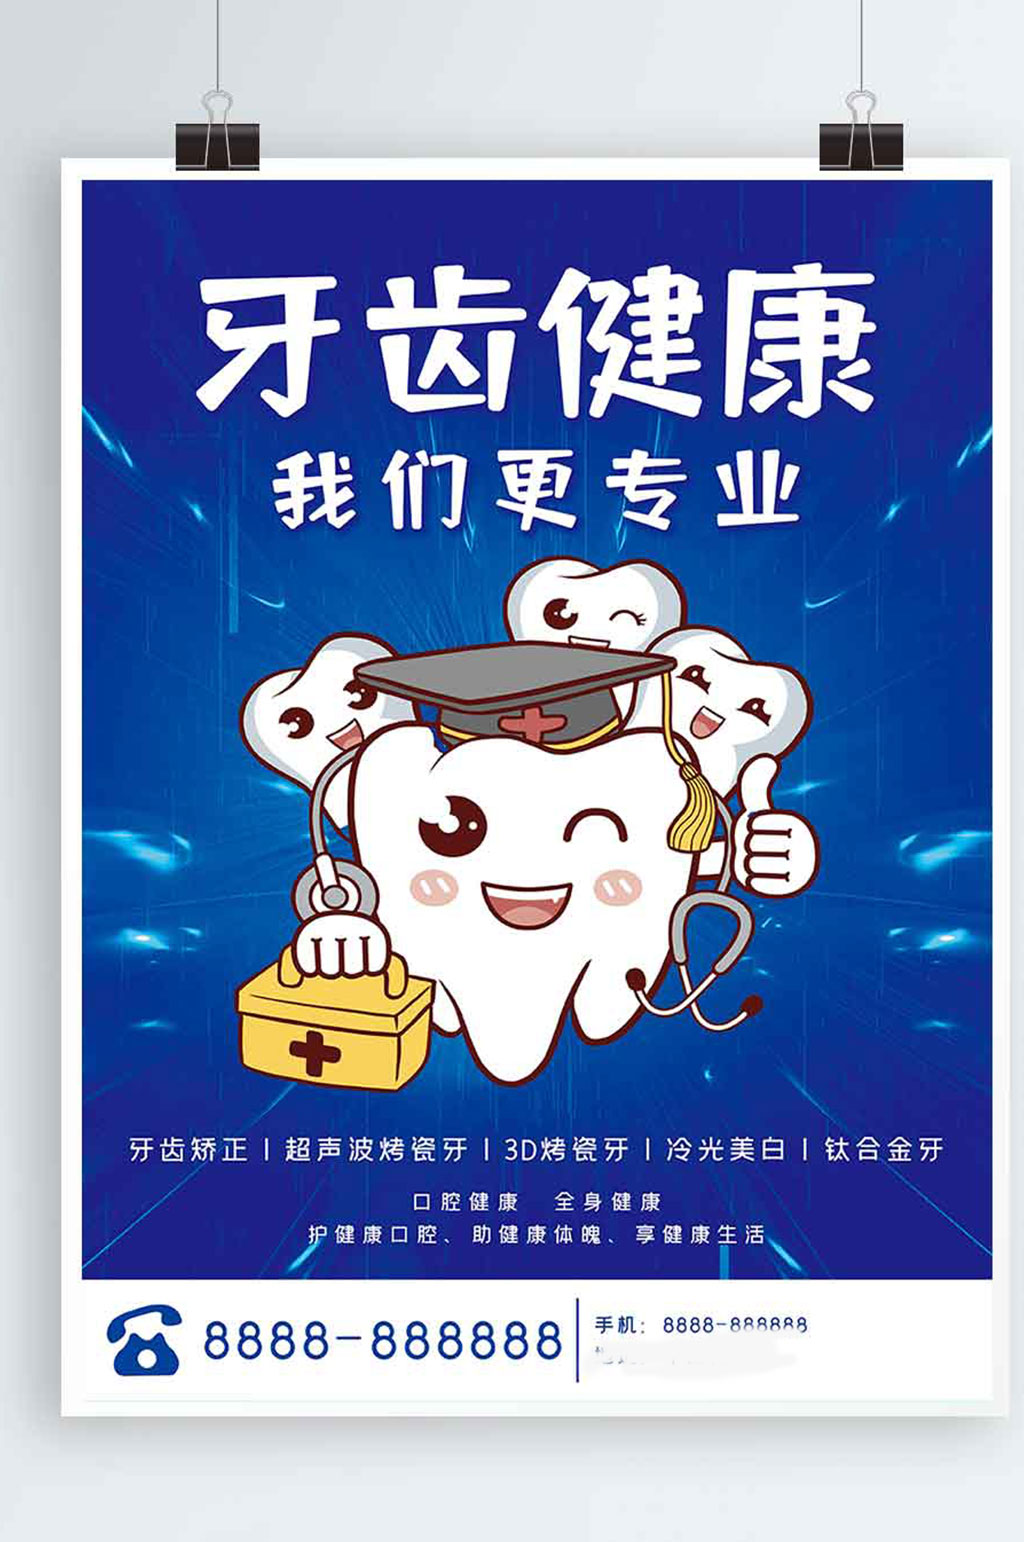 口腔健康牙科海报素材免费下载,本作品是由z莹上传的原创平面广告素材